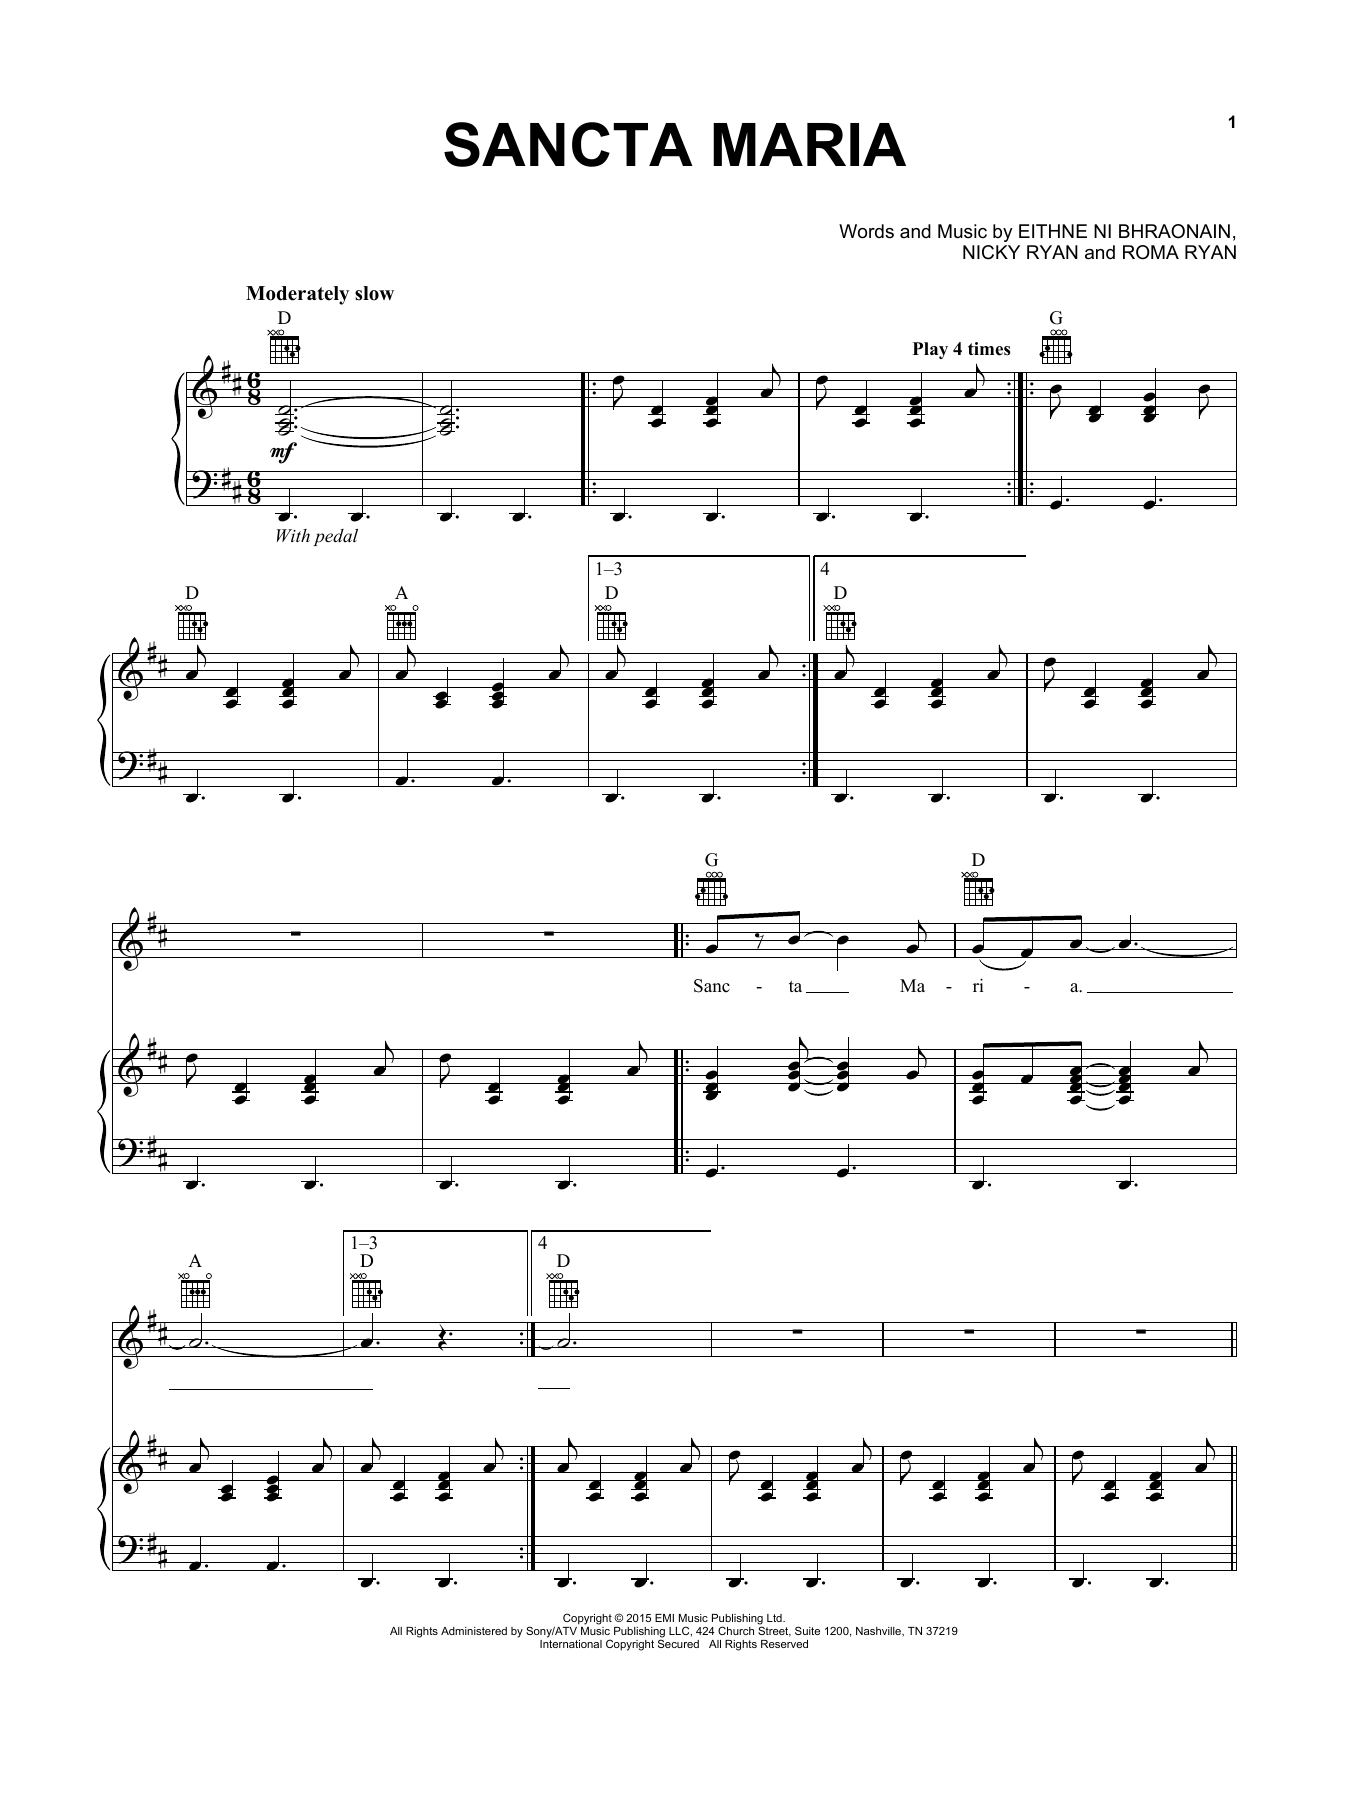 Enya Sancta Maria Sheet Music Notes & Chords for Piano, Vocal & Guitar (Right-Hand Melody) - Download or Print PDF